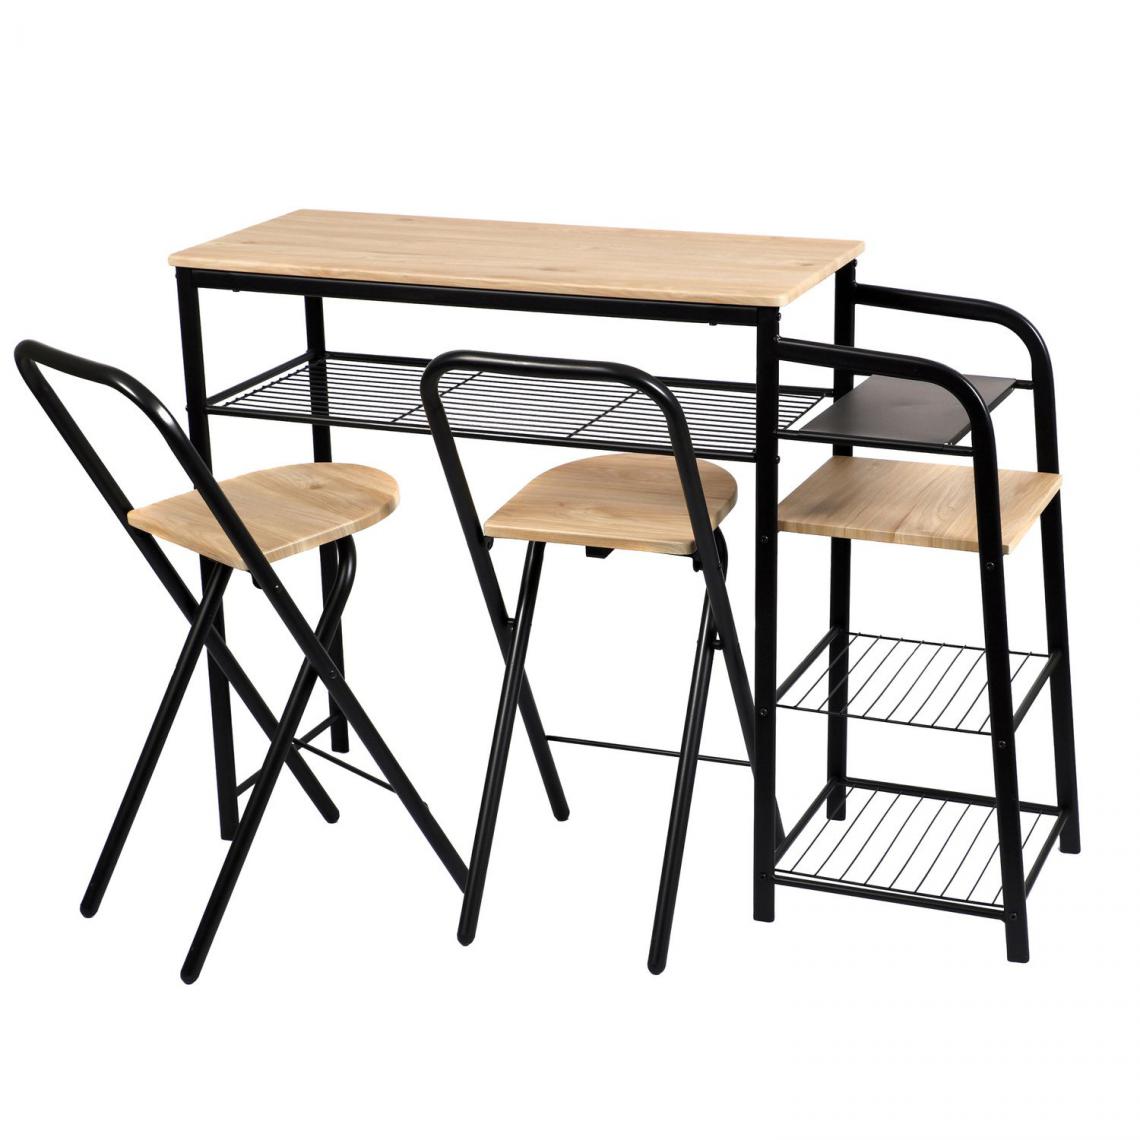 Urban Living - Table de Bar et ses 2 Tabourets - Noir et Beige - H. 88,5 cm - Tables à manger